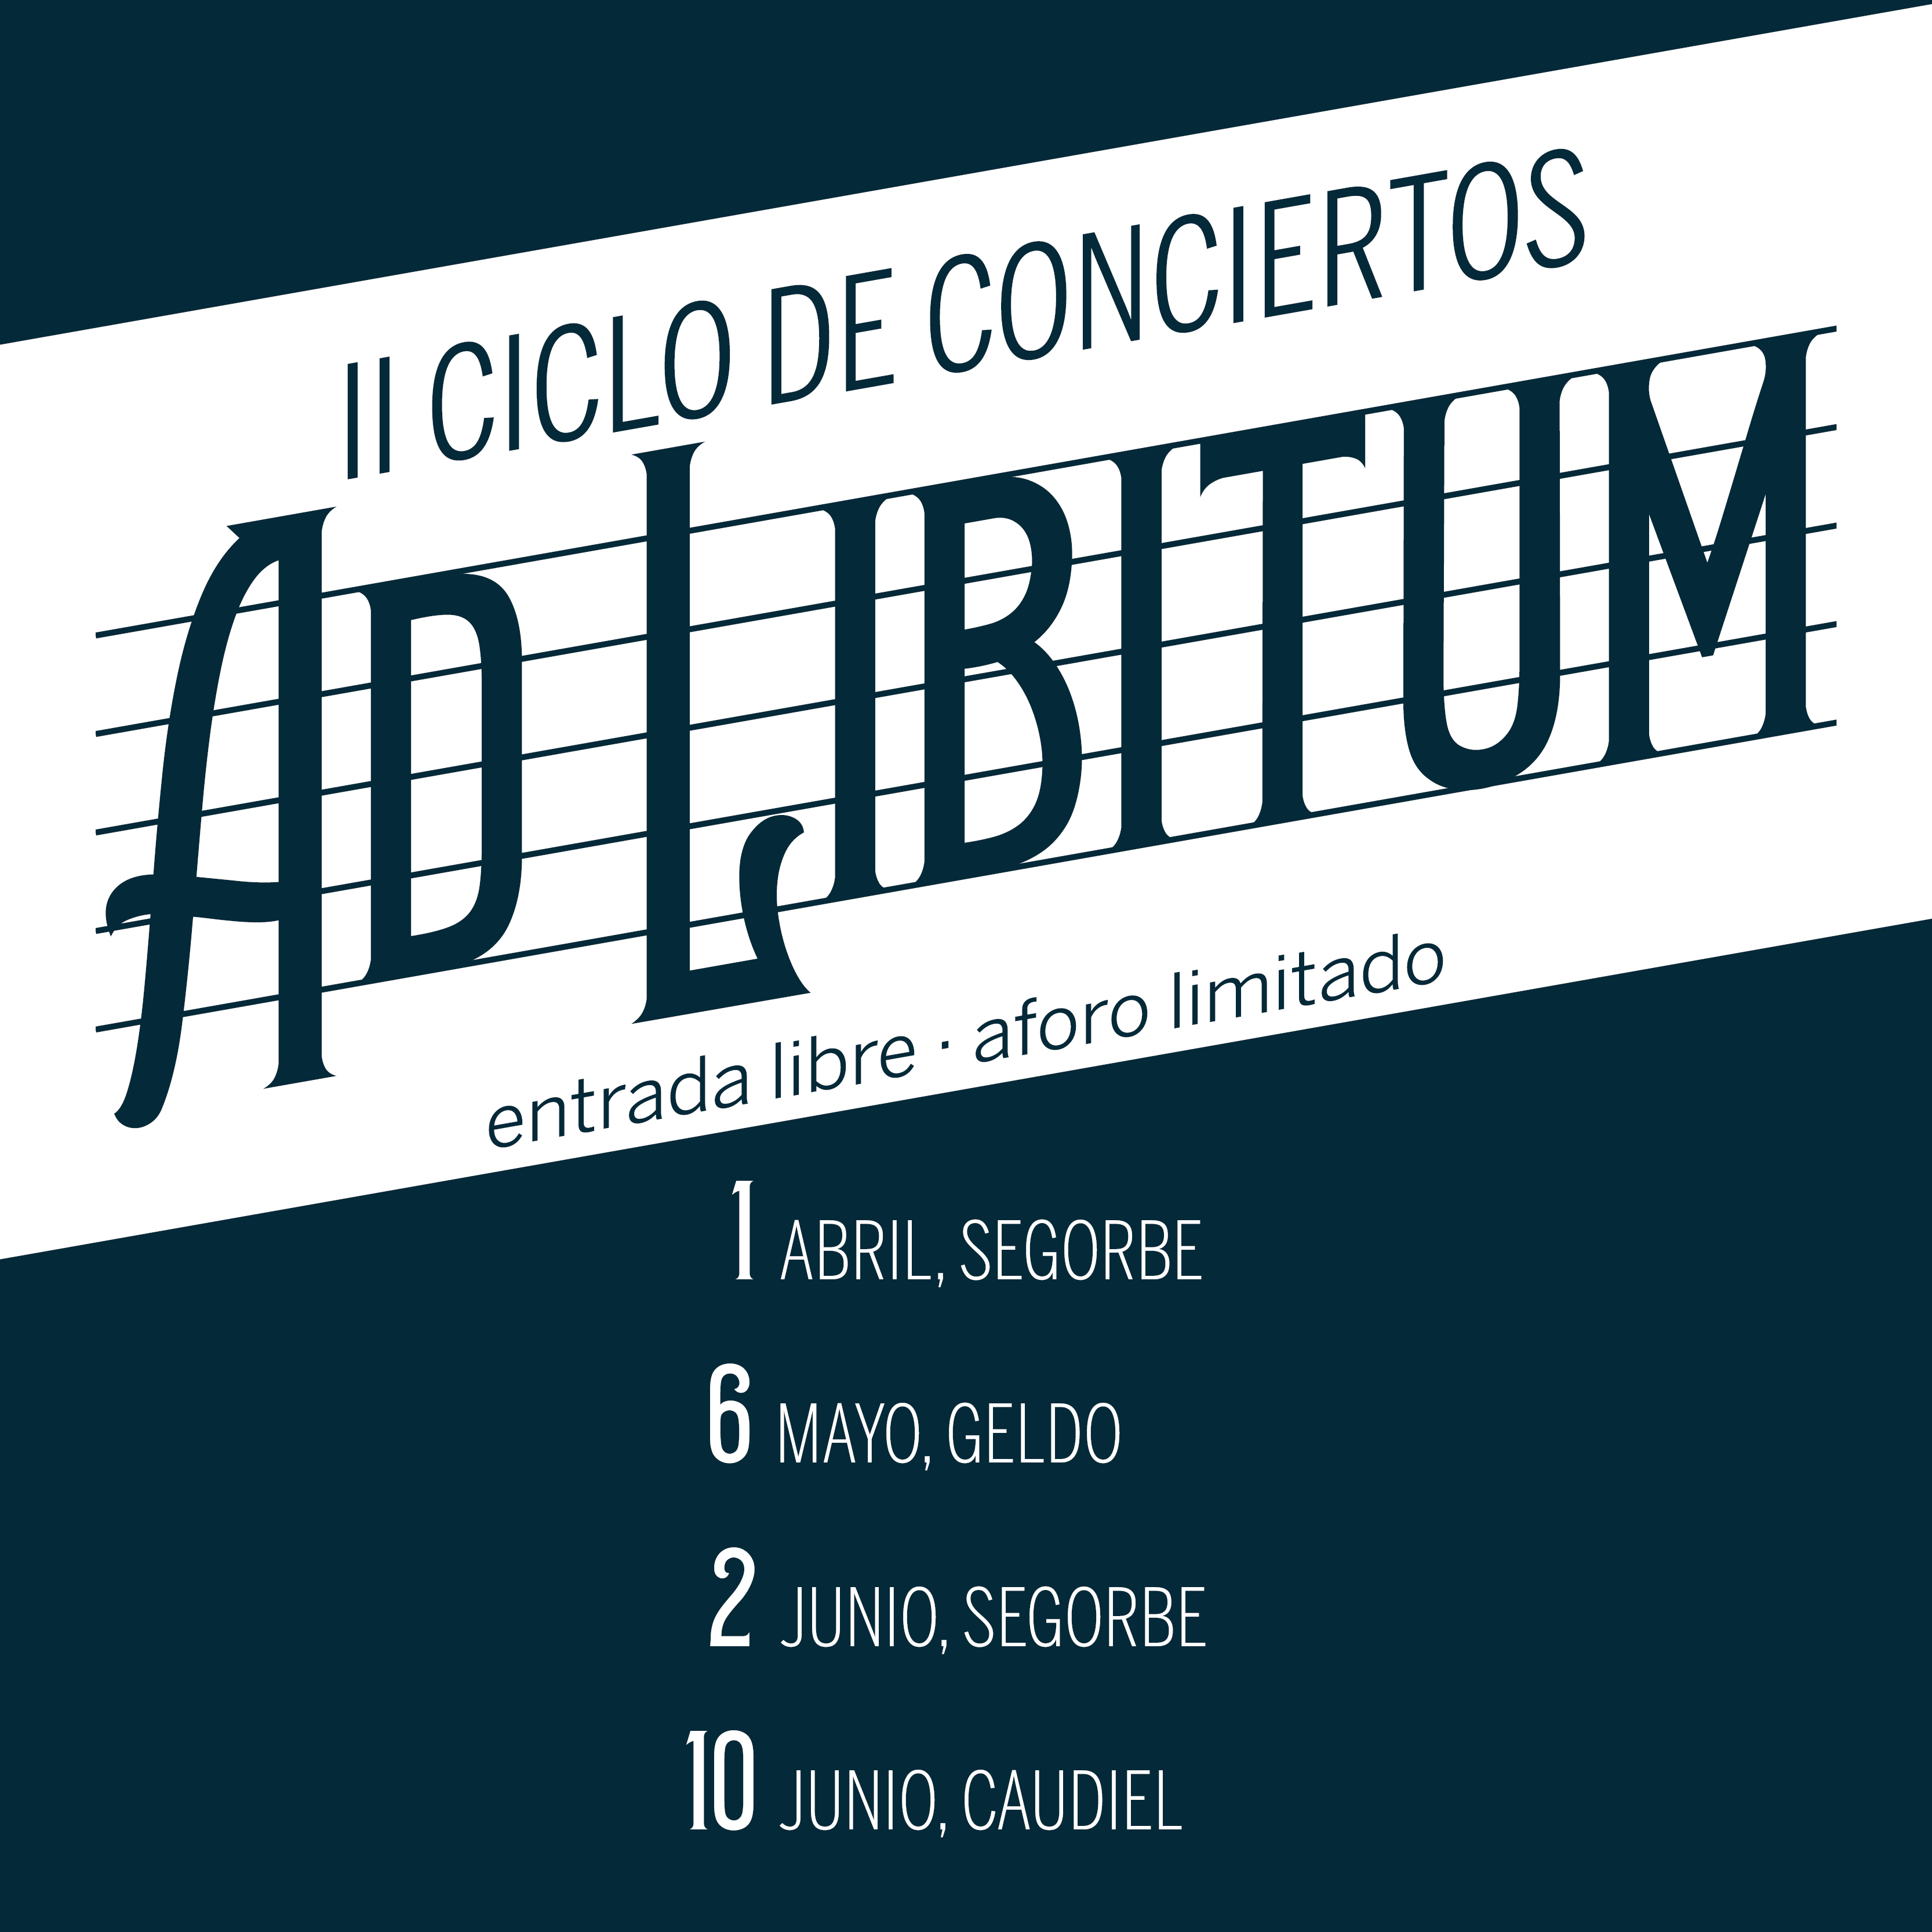 Ciclo de conciertos Ad Libitum en directo en Segorbe, Geldo y Caudiel